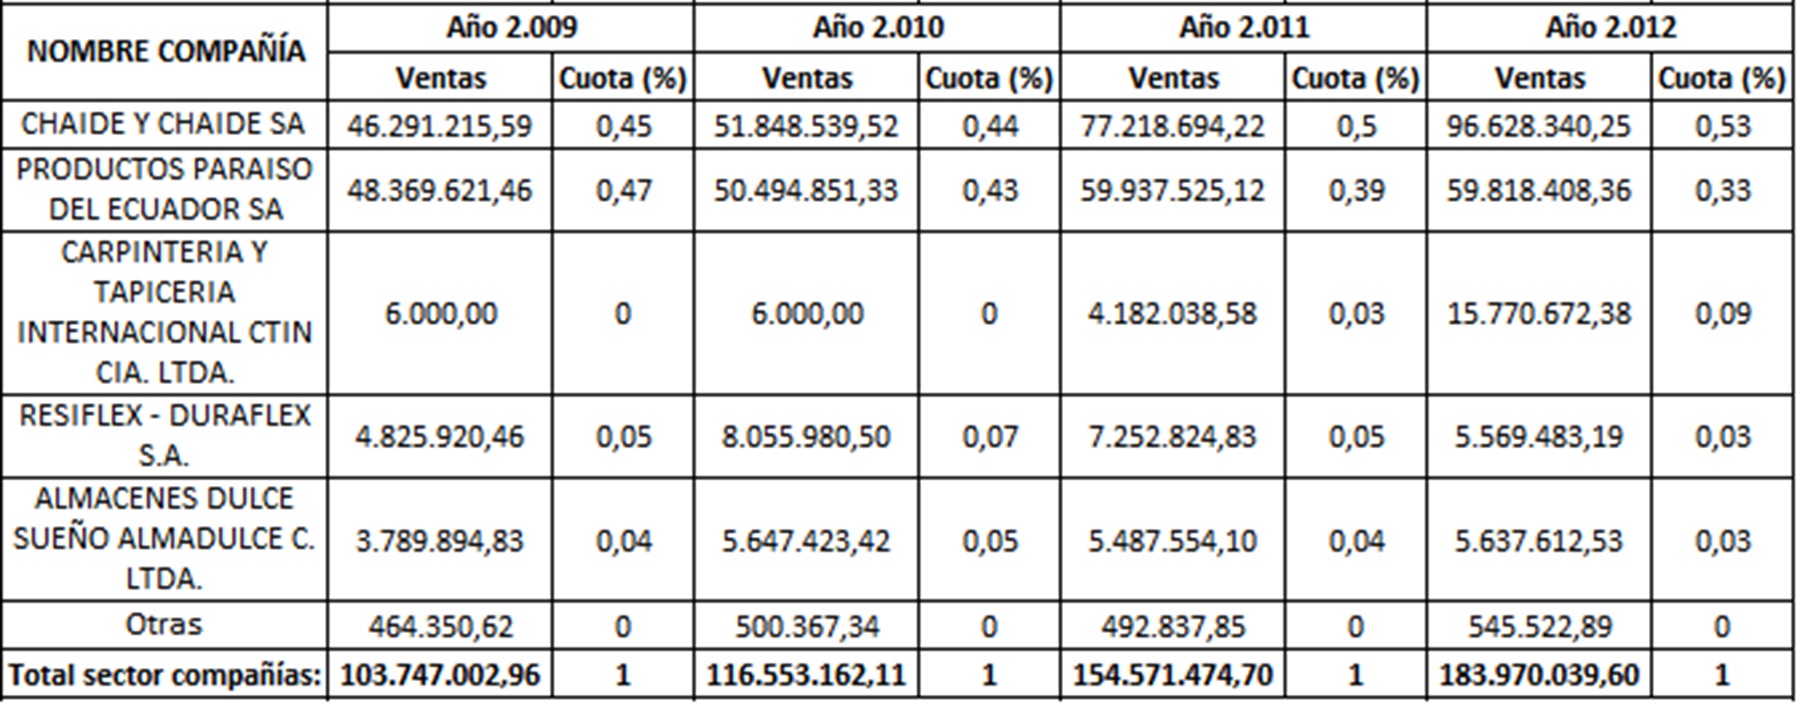 Ventas y cuota de mercado de las
empresas dedicadas a la fabricación de colchones en Ecuador. Período 2009-201